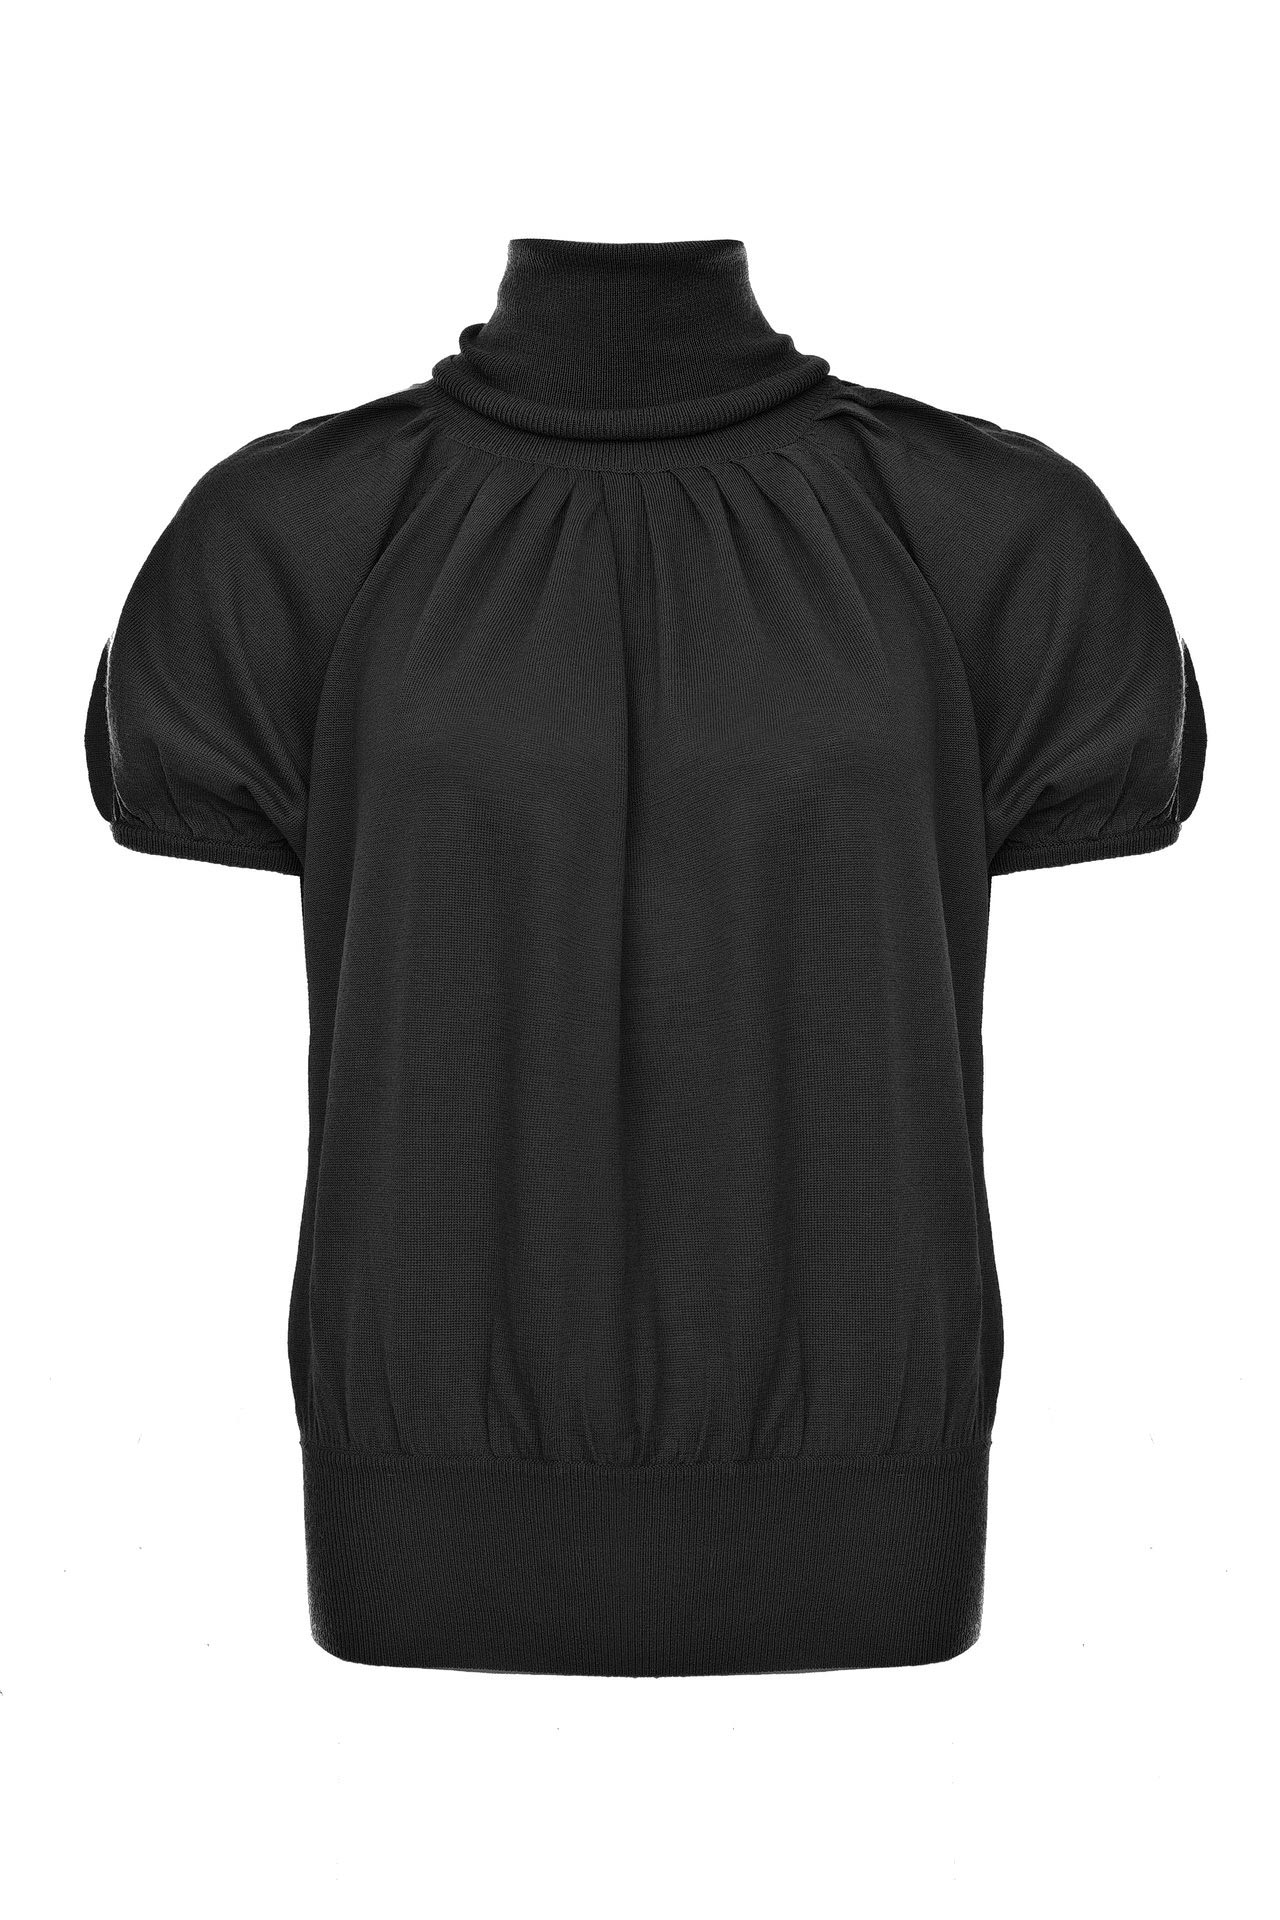 Одежда женская Джемпер LETICIA MILANO (DGEMPER1/18.1). Купить за 14500 руб.